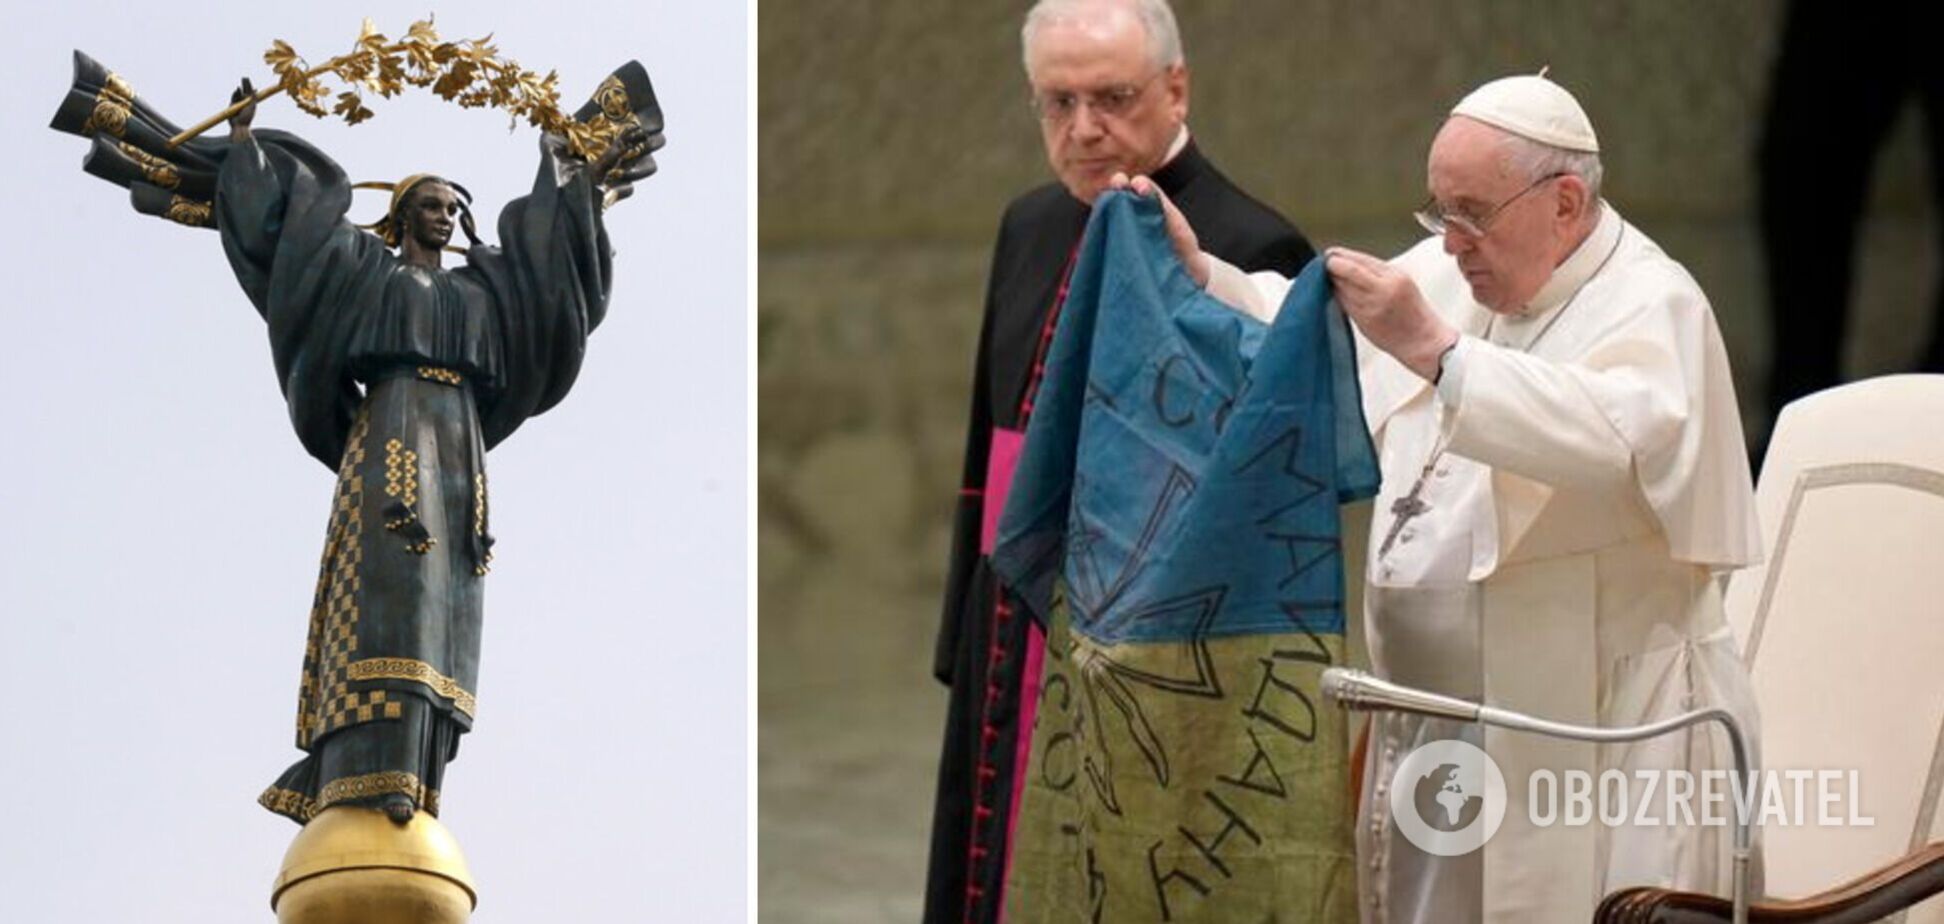 Посол при Святому престолі: візит Папи до Києва можливий, йому повідомляють інформацію